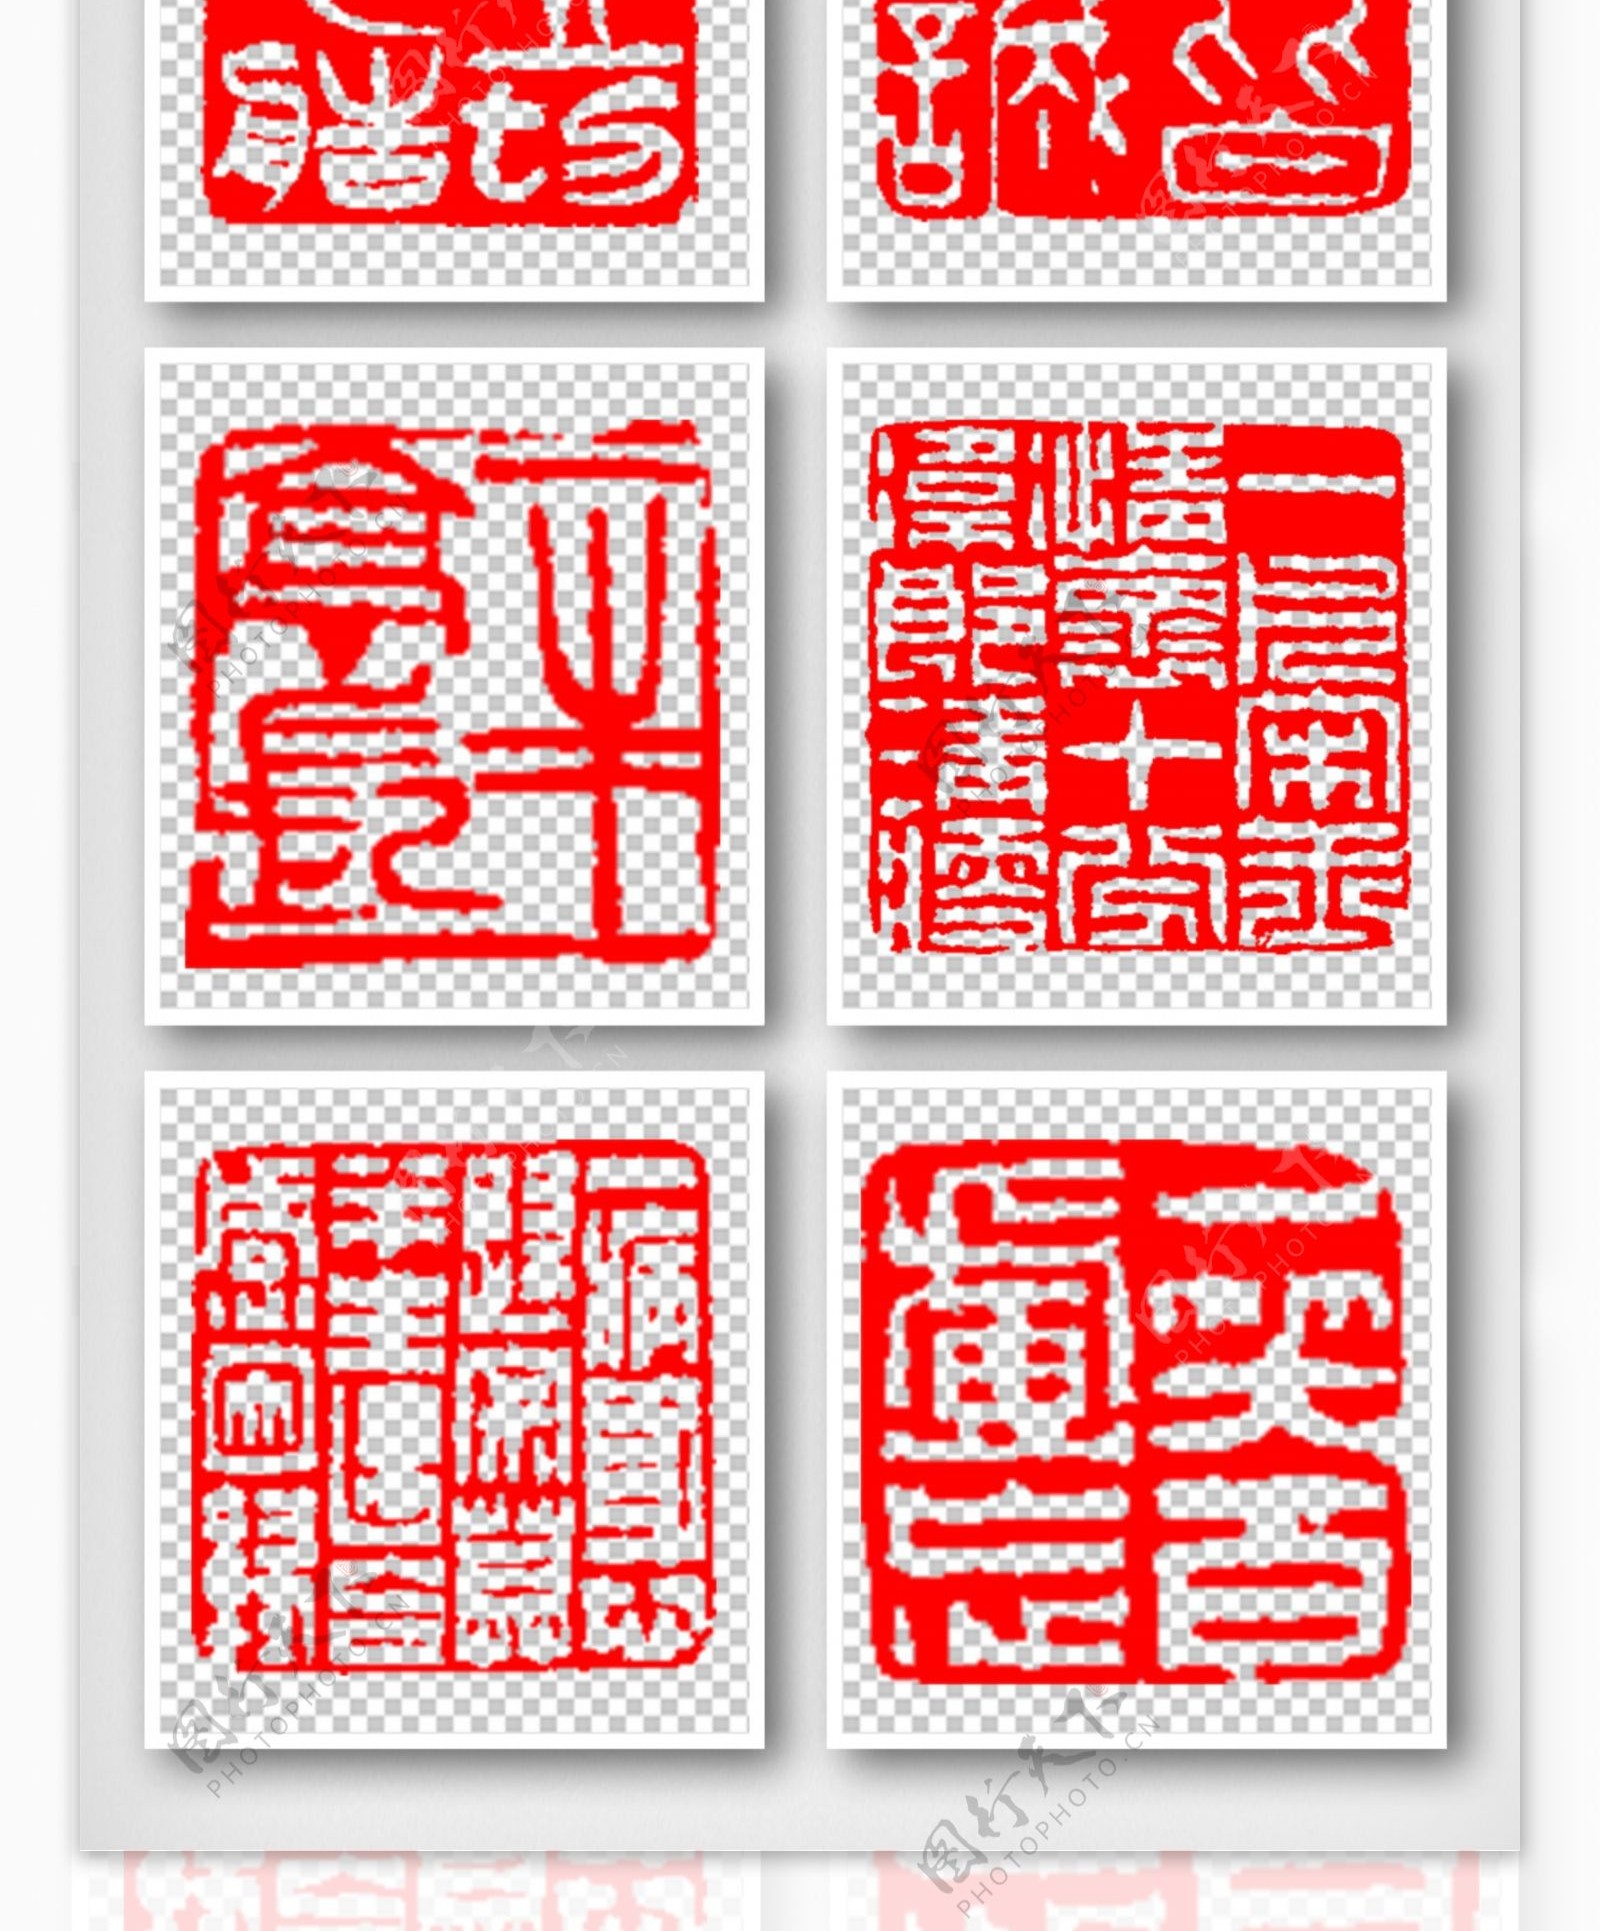 中国古典格式印章psd素材